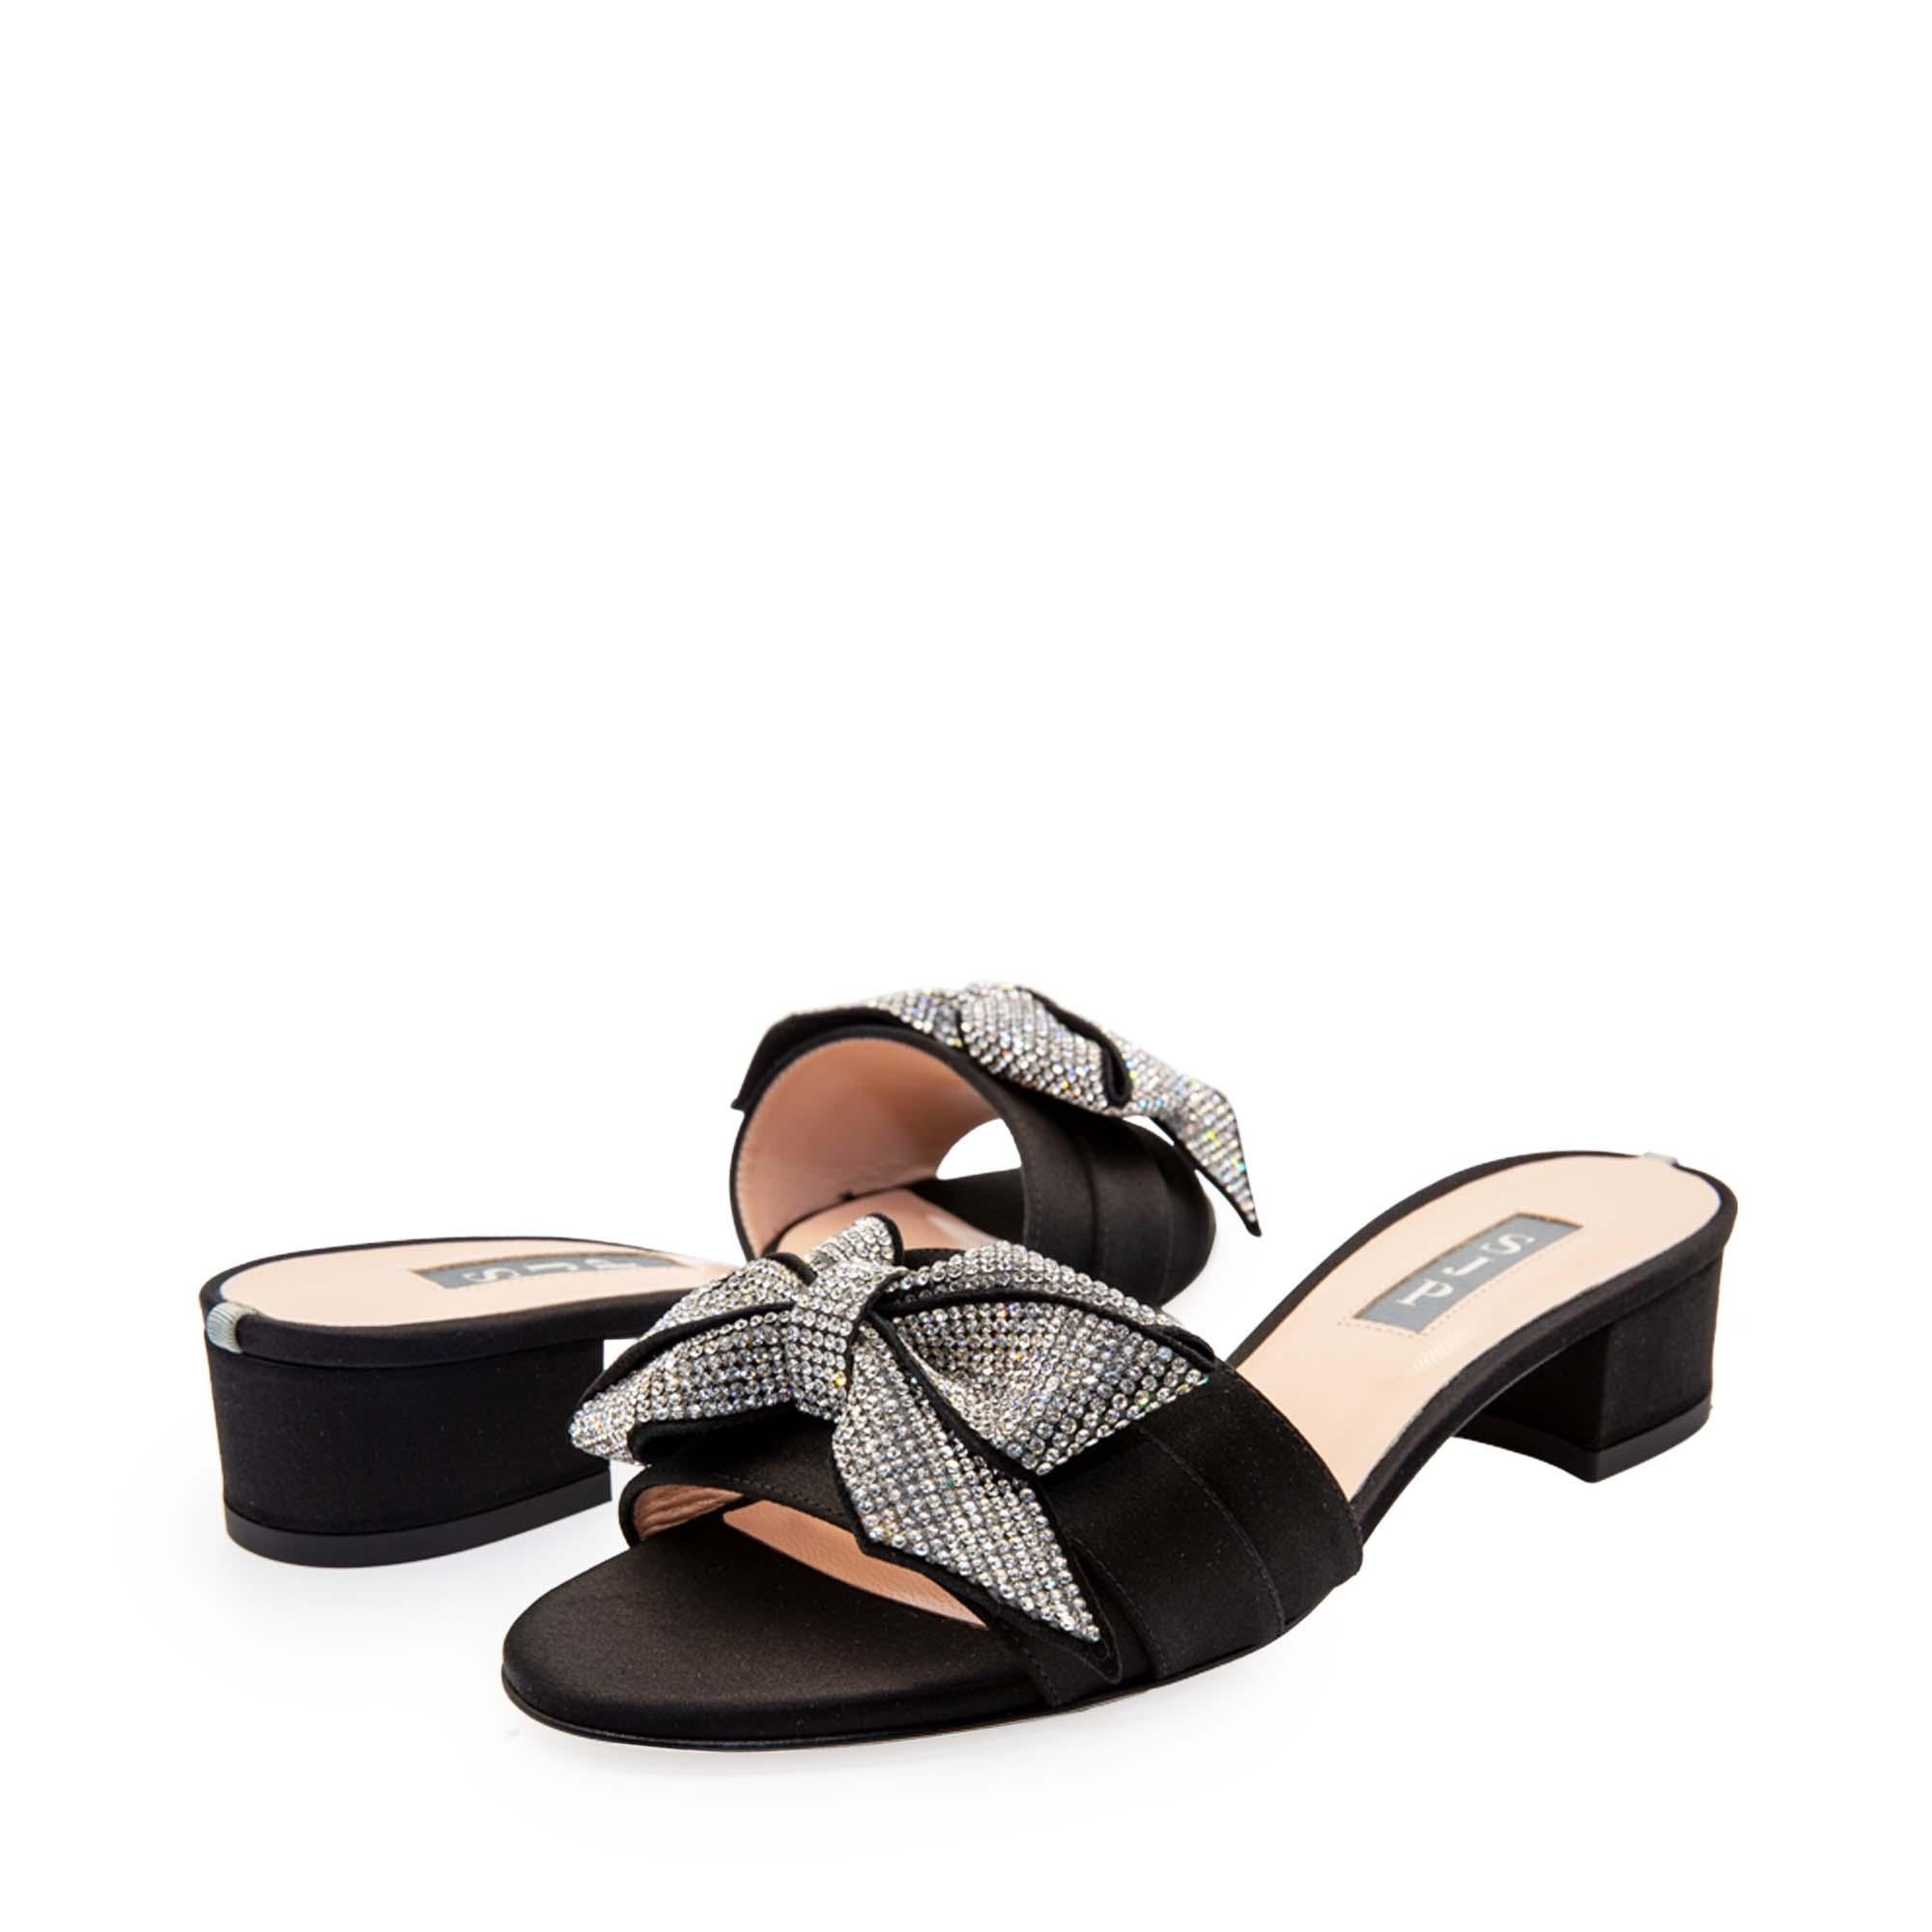 Sarita Black Satin Sandals 30mm - InstaRunway.com